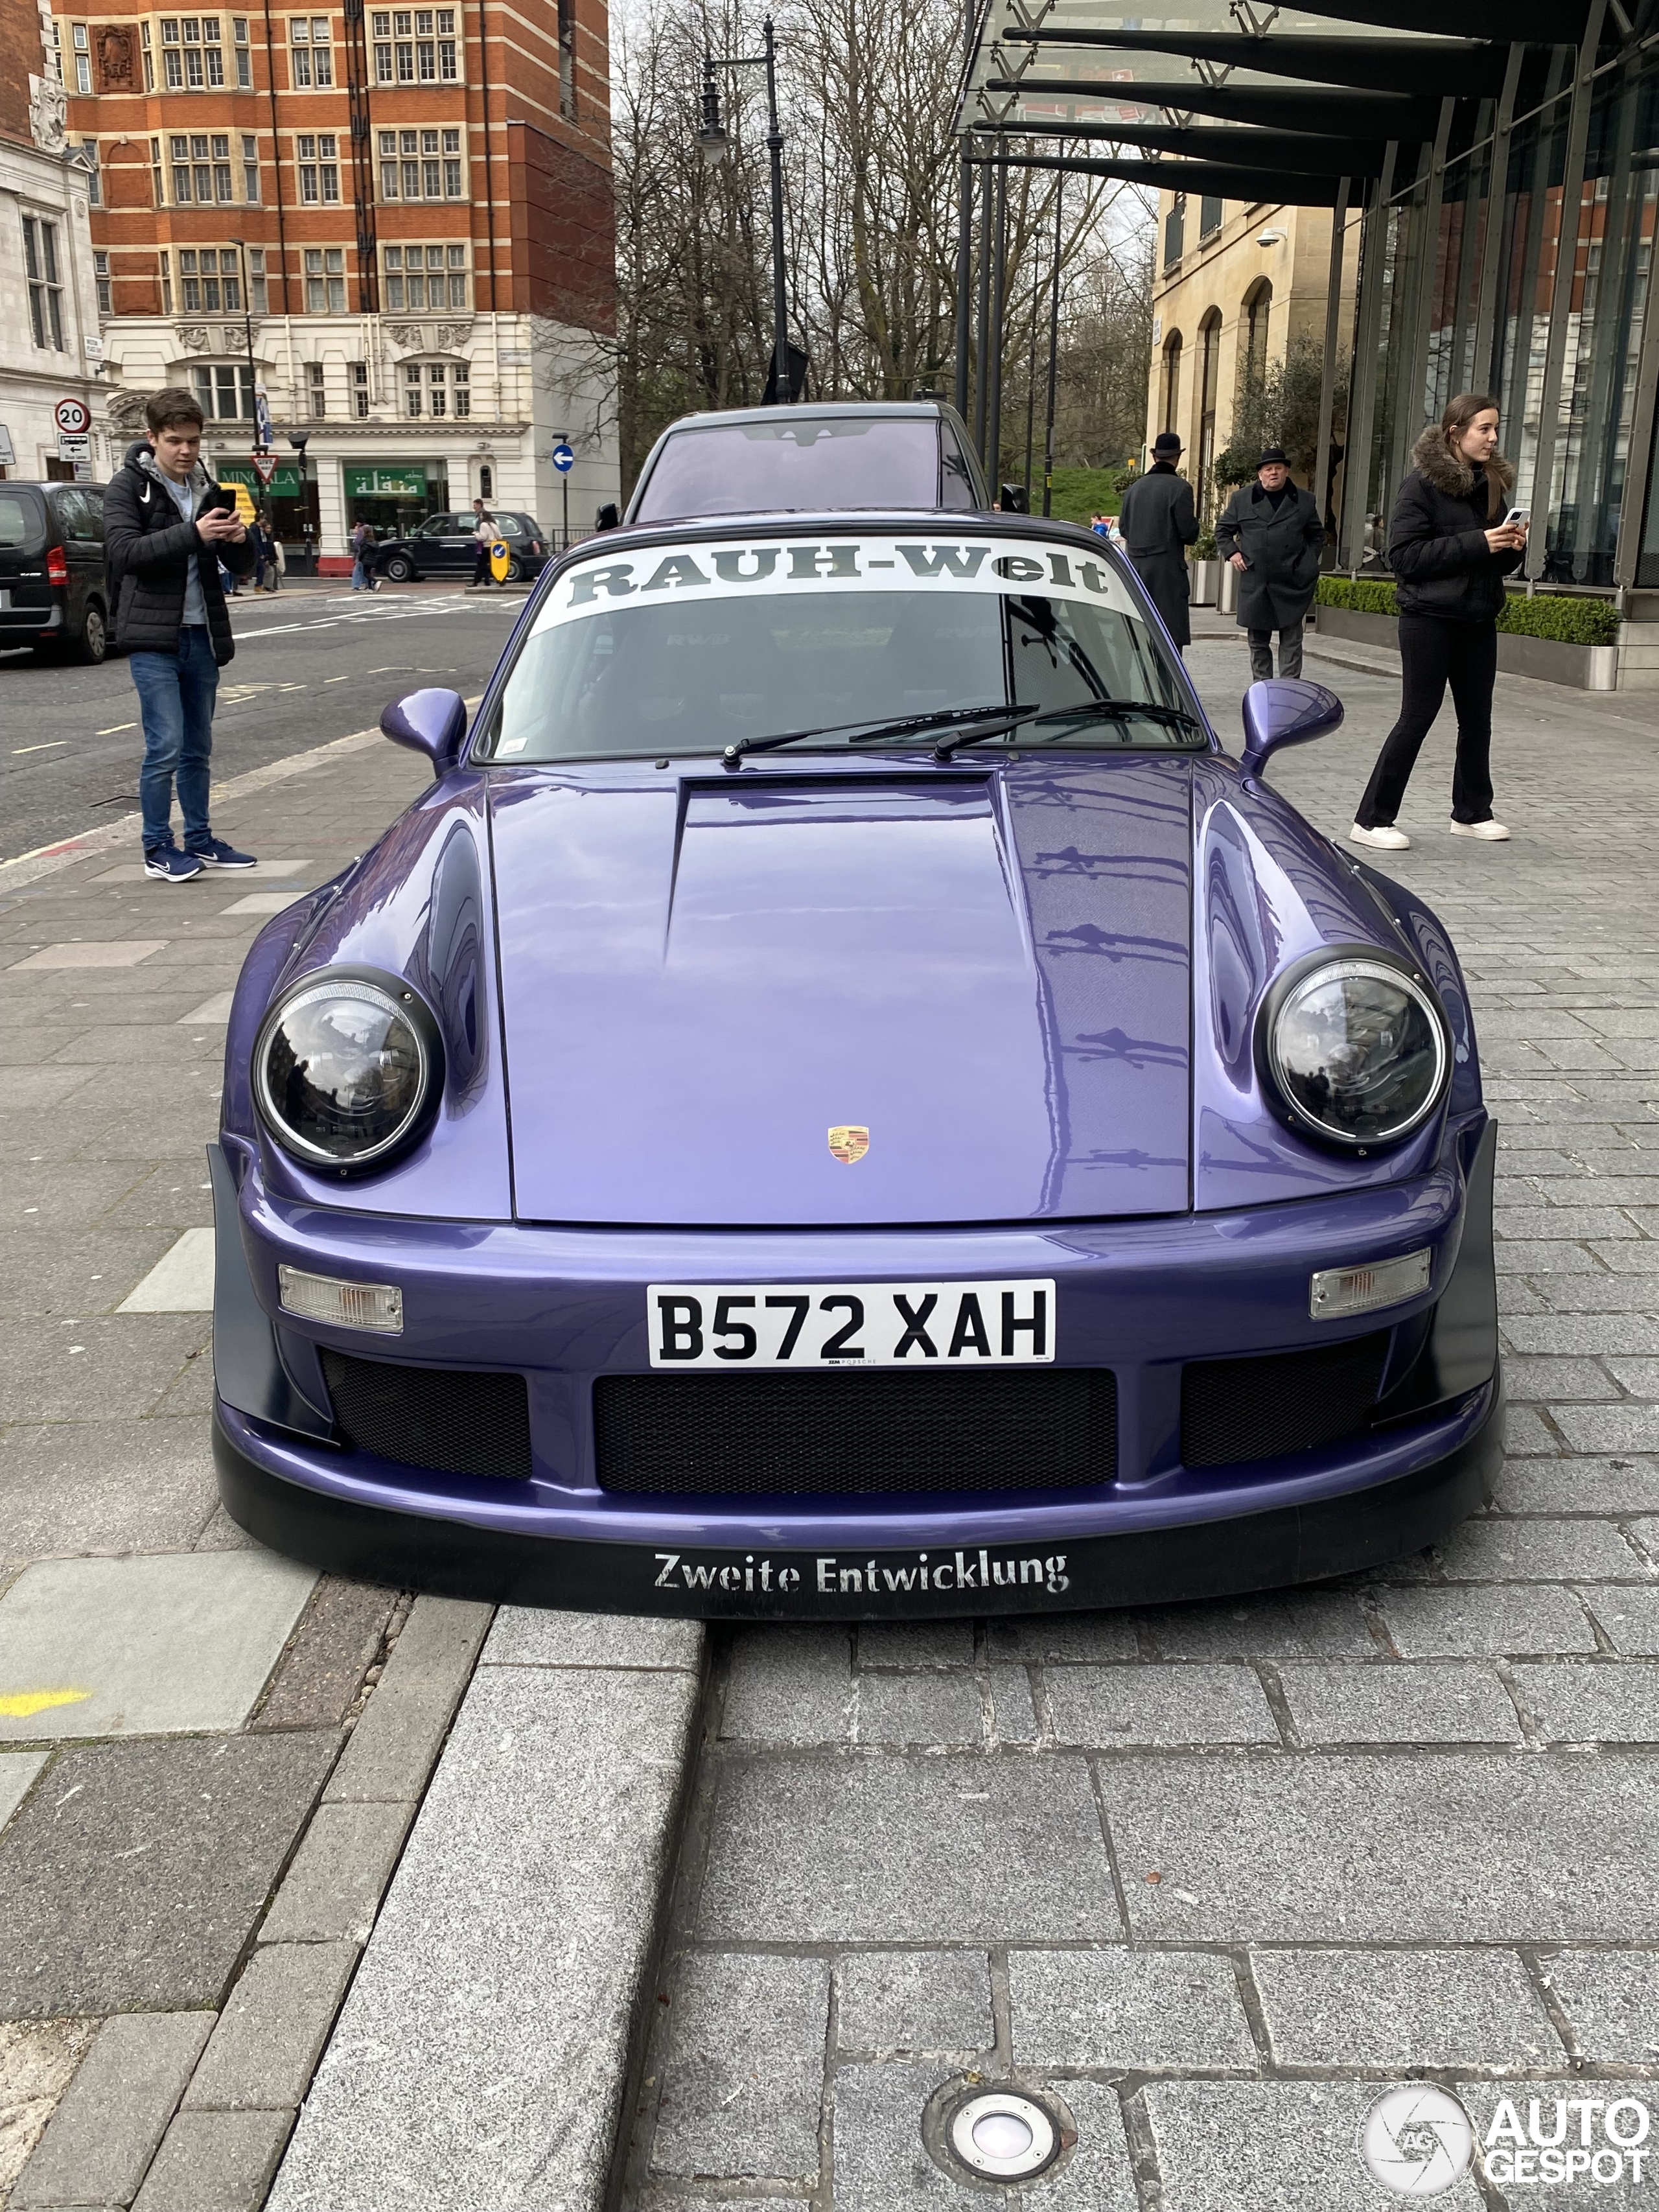 Porsche Rauh-Welt Begriff 930 Turbo